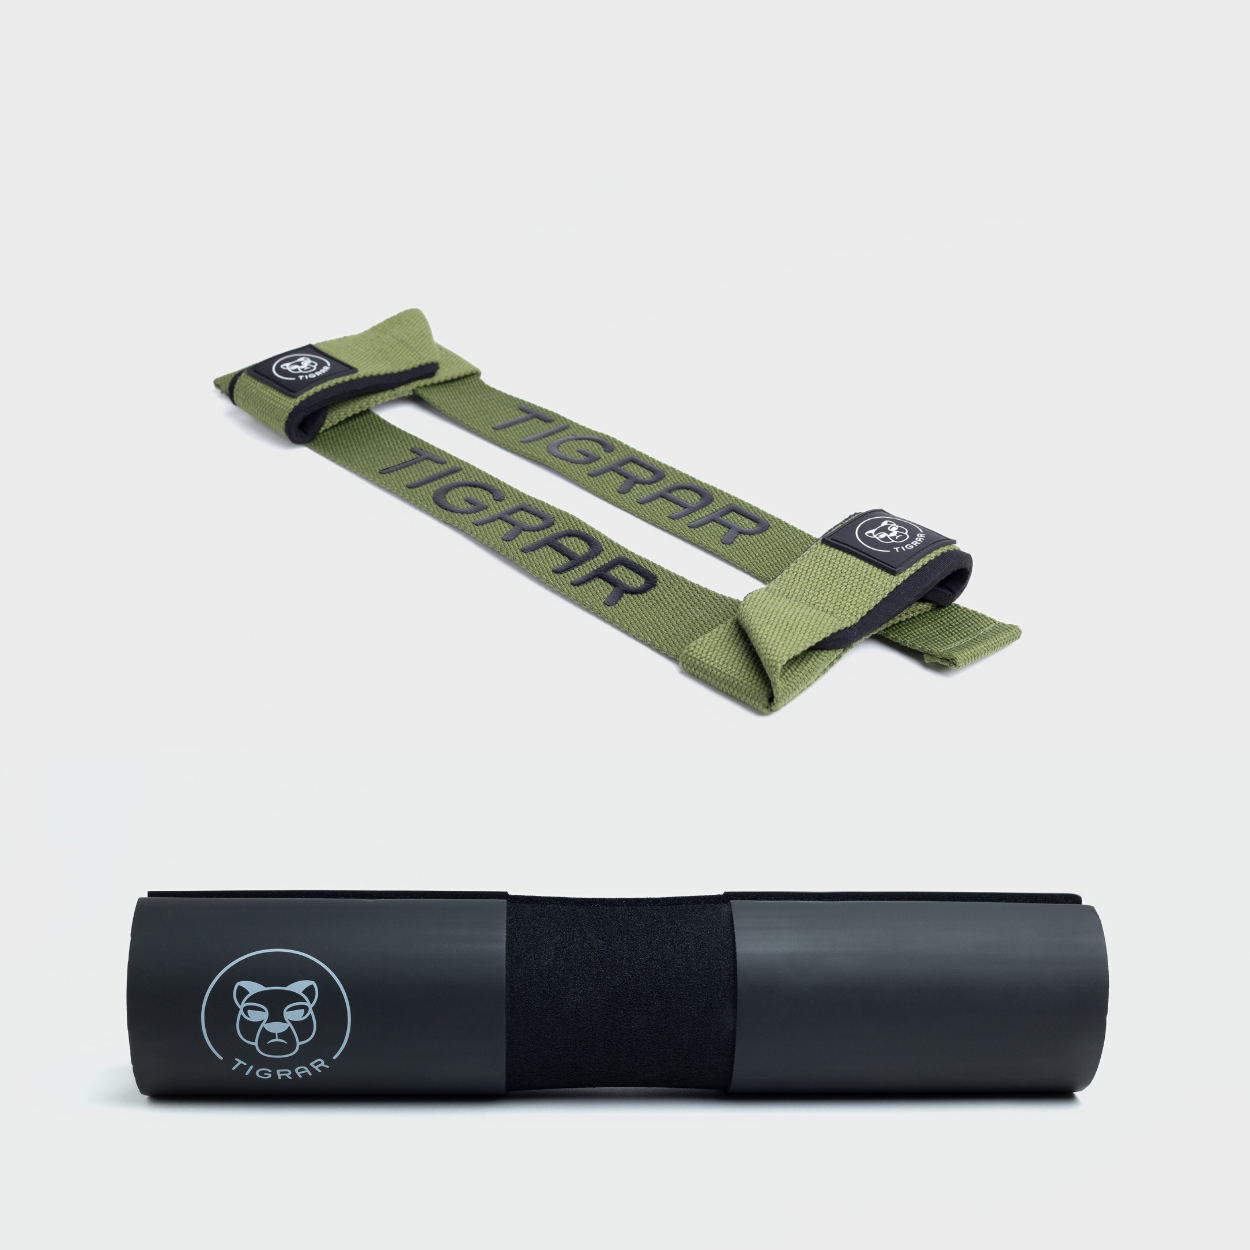 Combinatie van groene lifting straps en zwarte Tigrar barbell pad, beide duurzaam en ontworpen voor efficiënte krachtuitoefening.